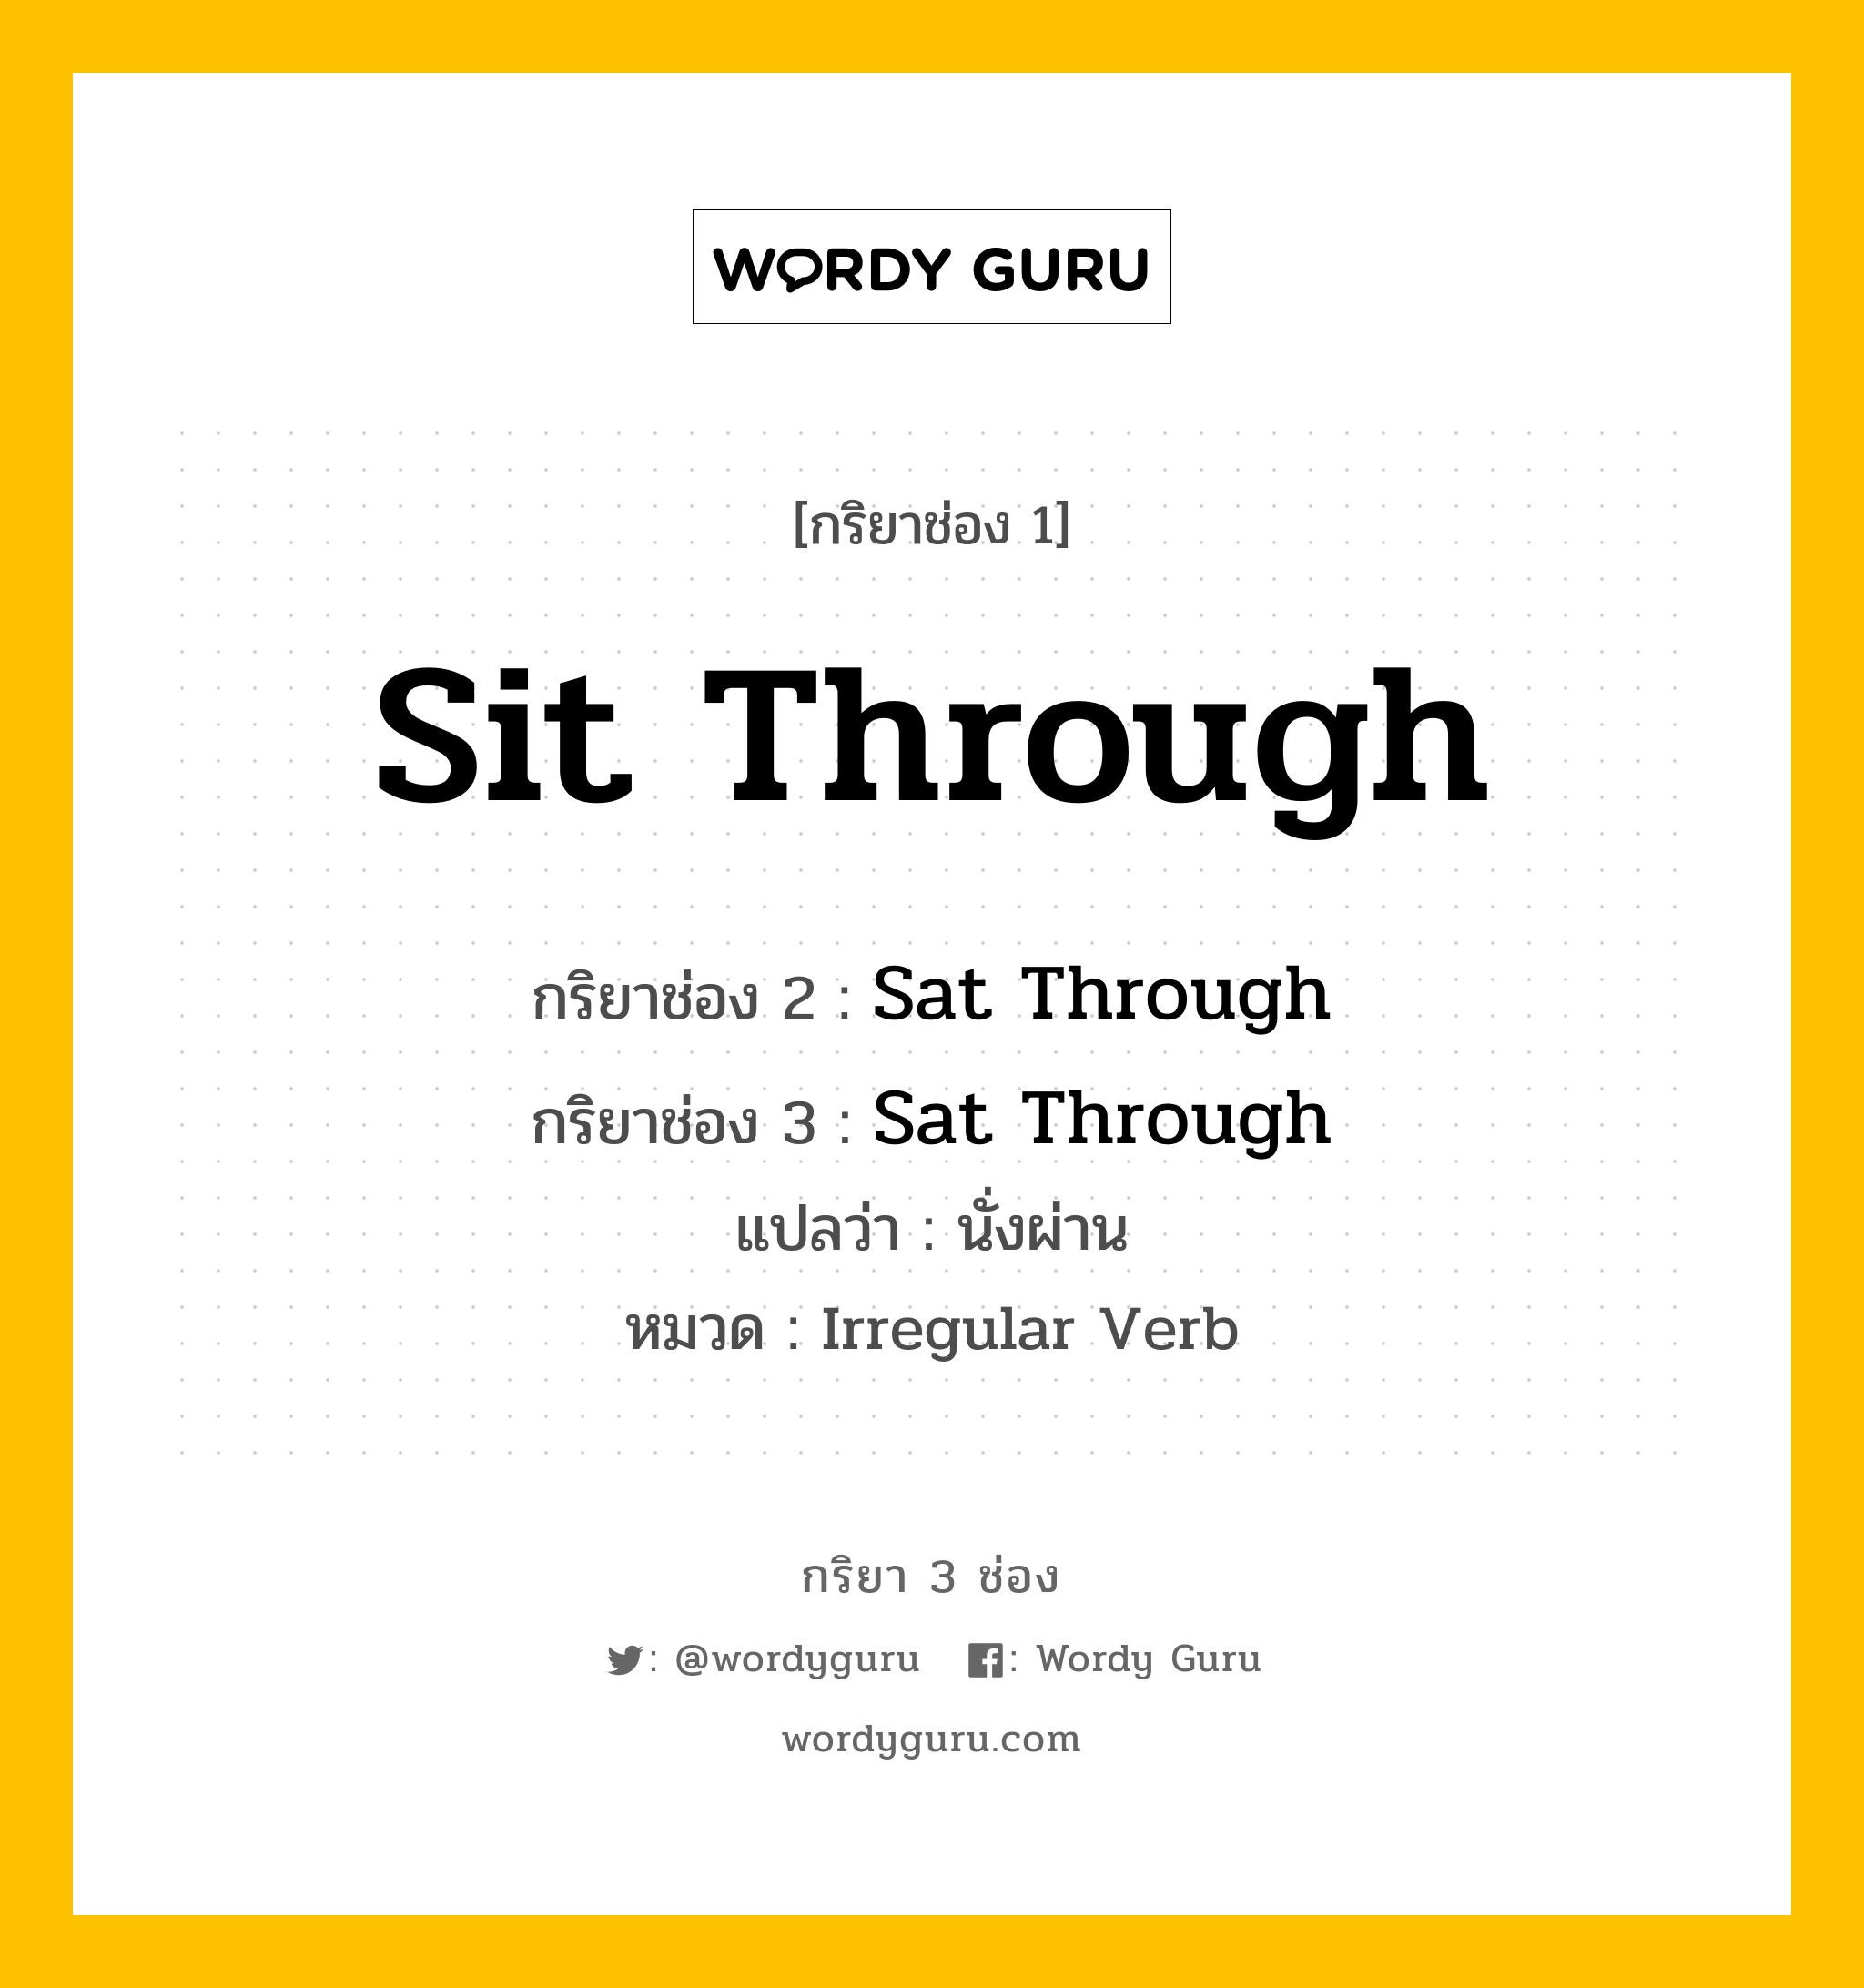 กริยา 3 ช่อง ของ Sit Through คืออะไร? มาดูคำอ่าน คำแปลกันเลย, กริยาช่อง 1 Sit Through กริยาช่อง 2 Sat Through กริยาช่อง 3 Sat Through แปลว่า นั่งผ่าน หมวด Irregular Verb หมวด Irregular Verb